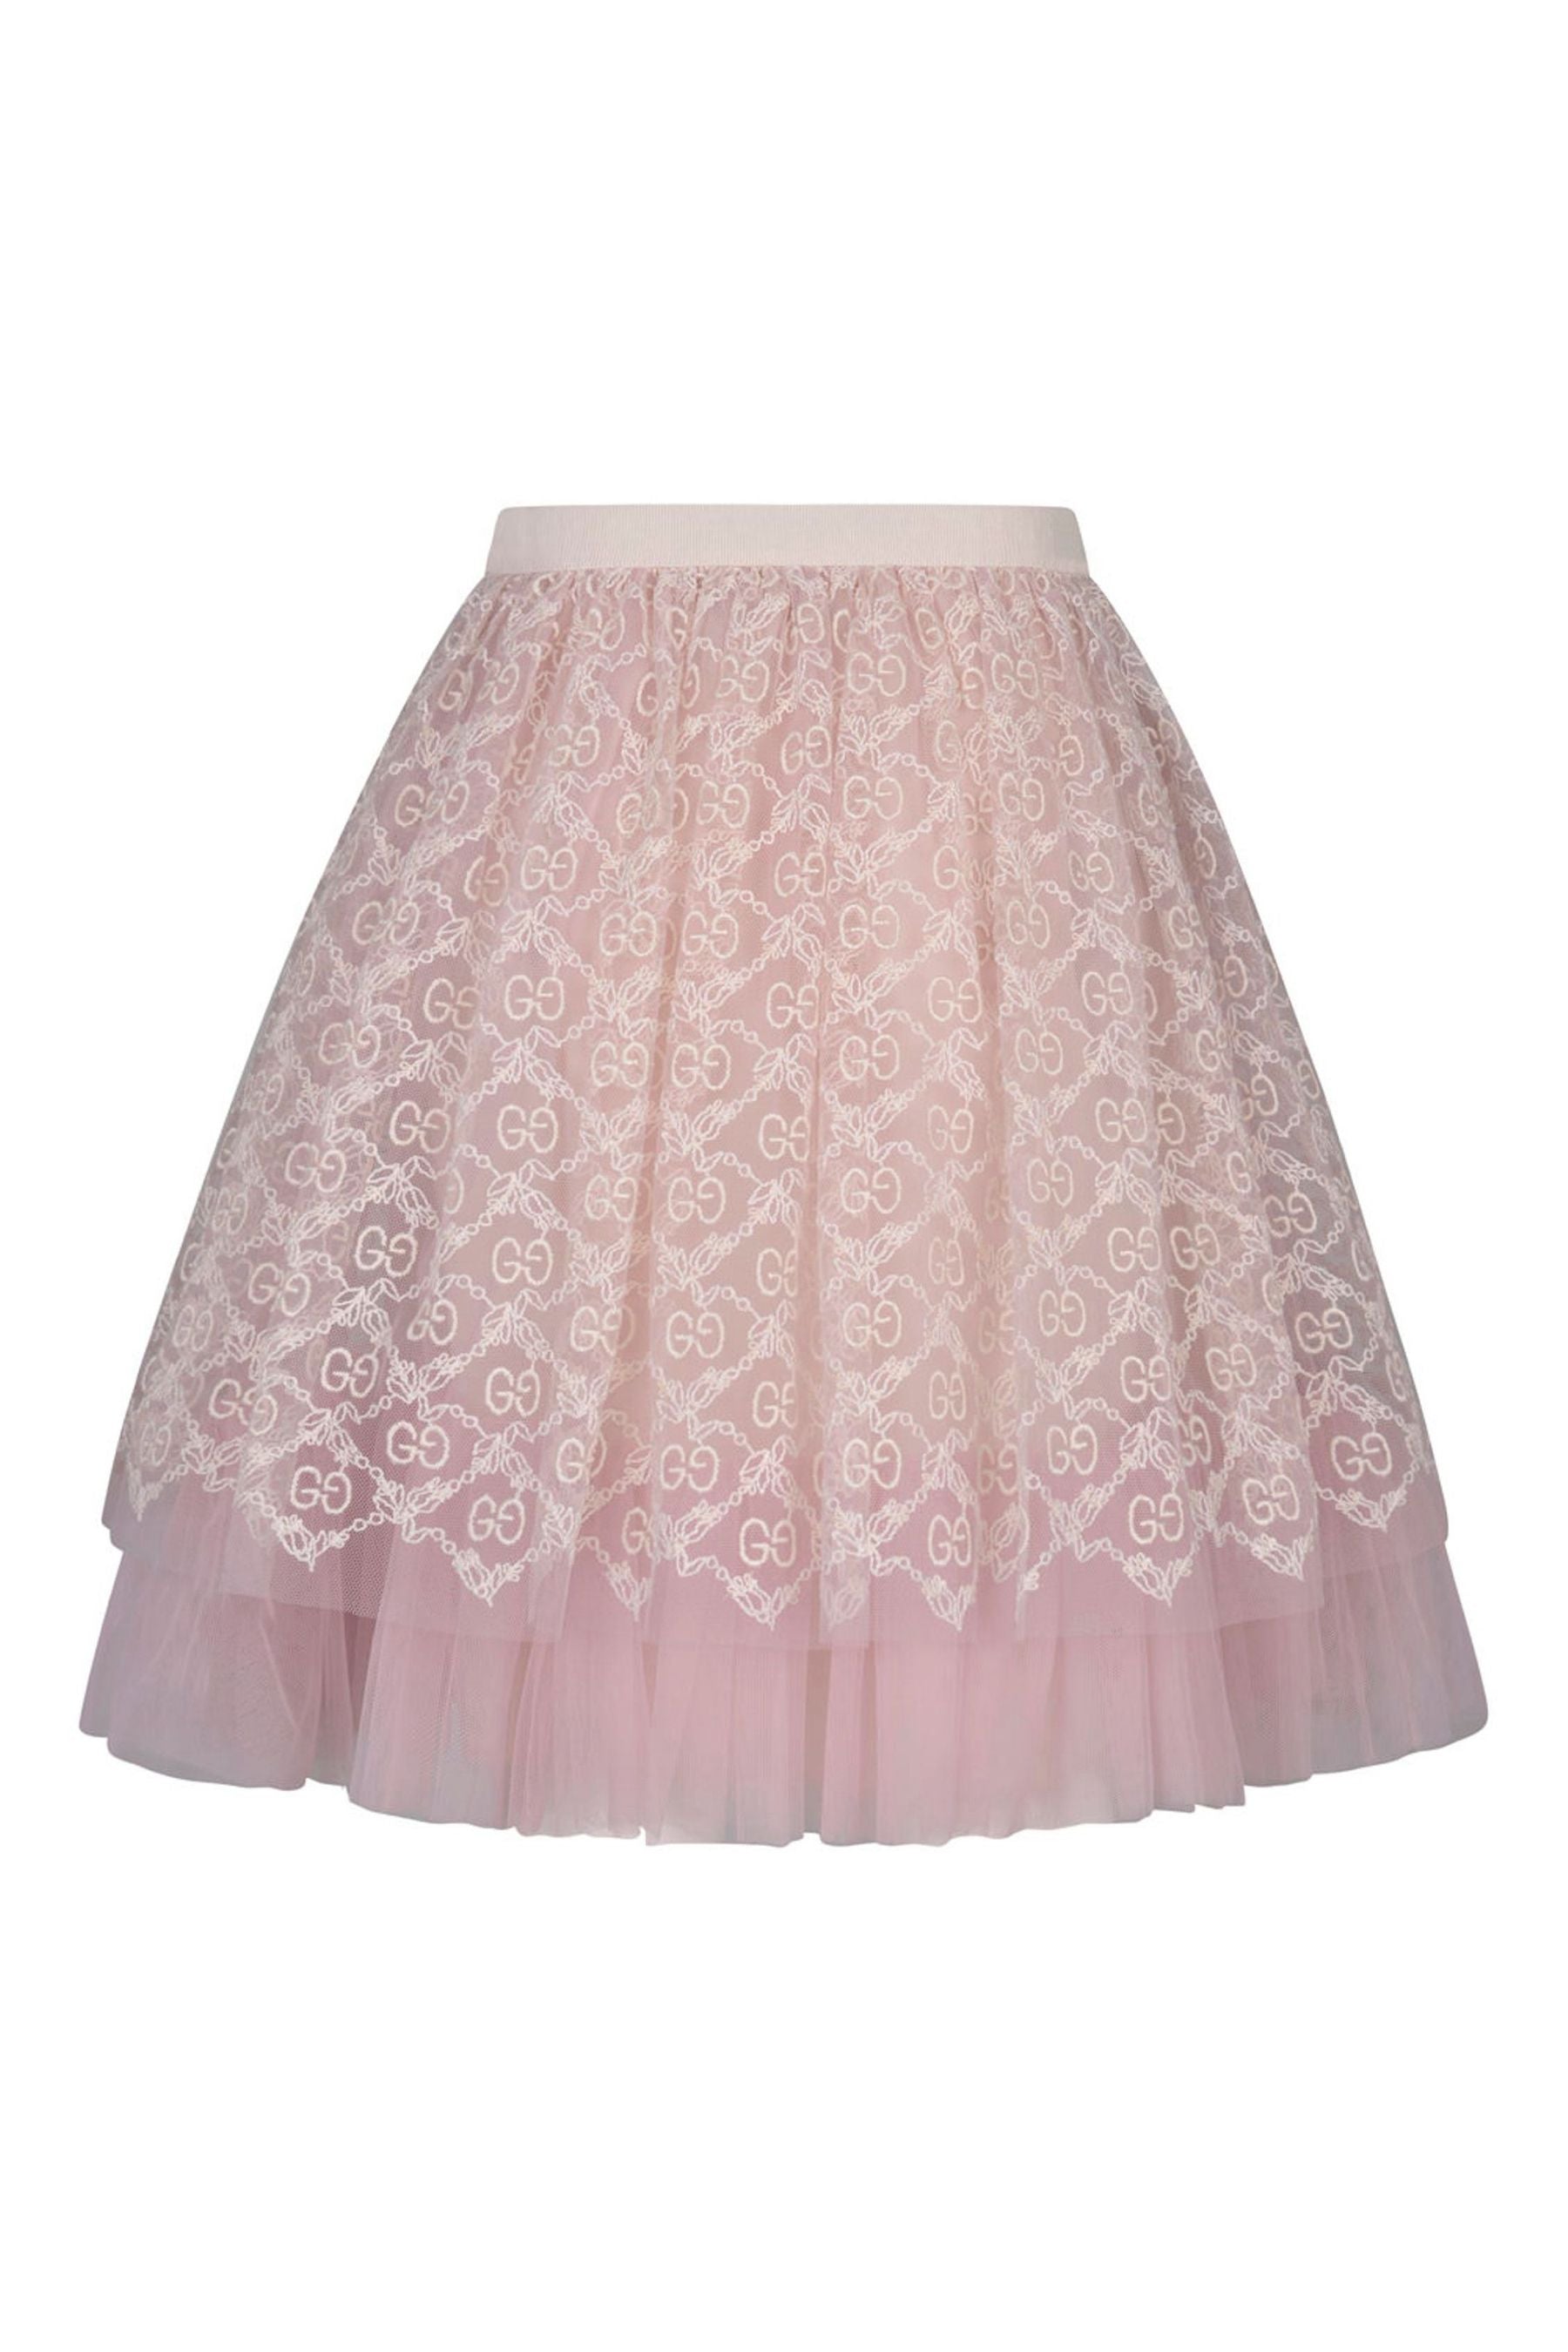 グッチガールズライトチュールGG刺繍スカート | Childsplay Clothing